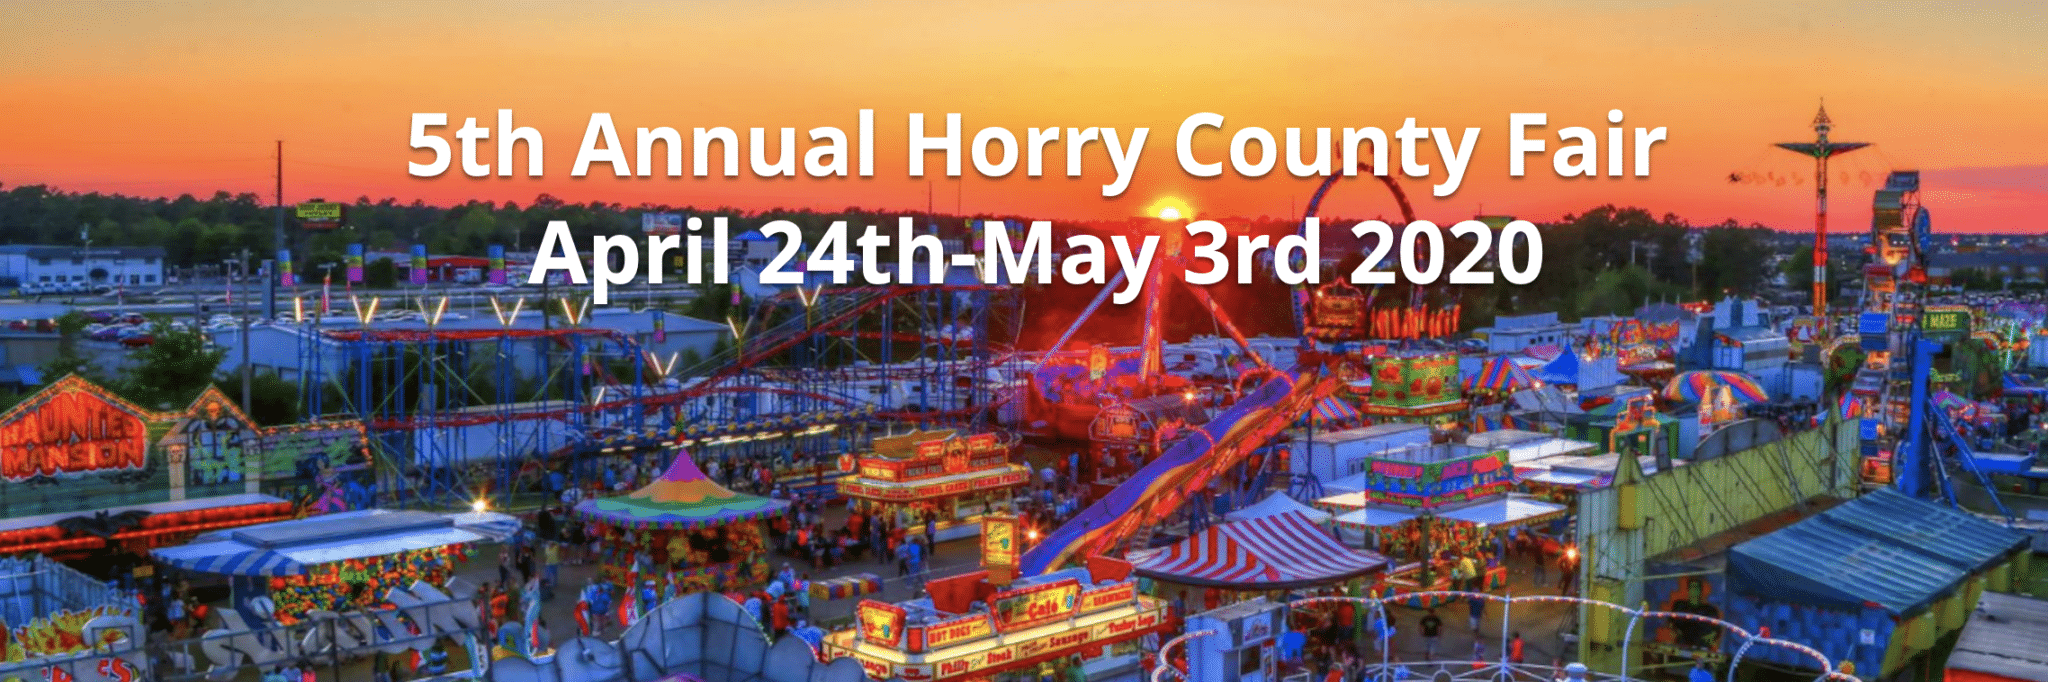 horry county fair